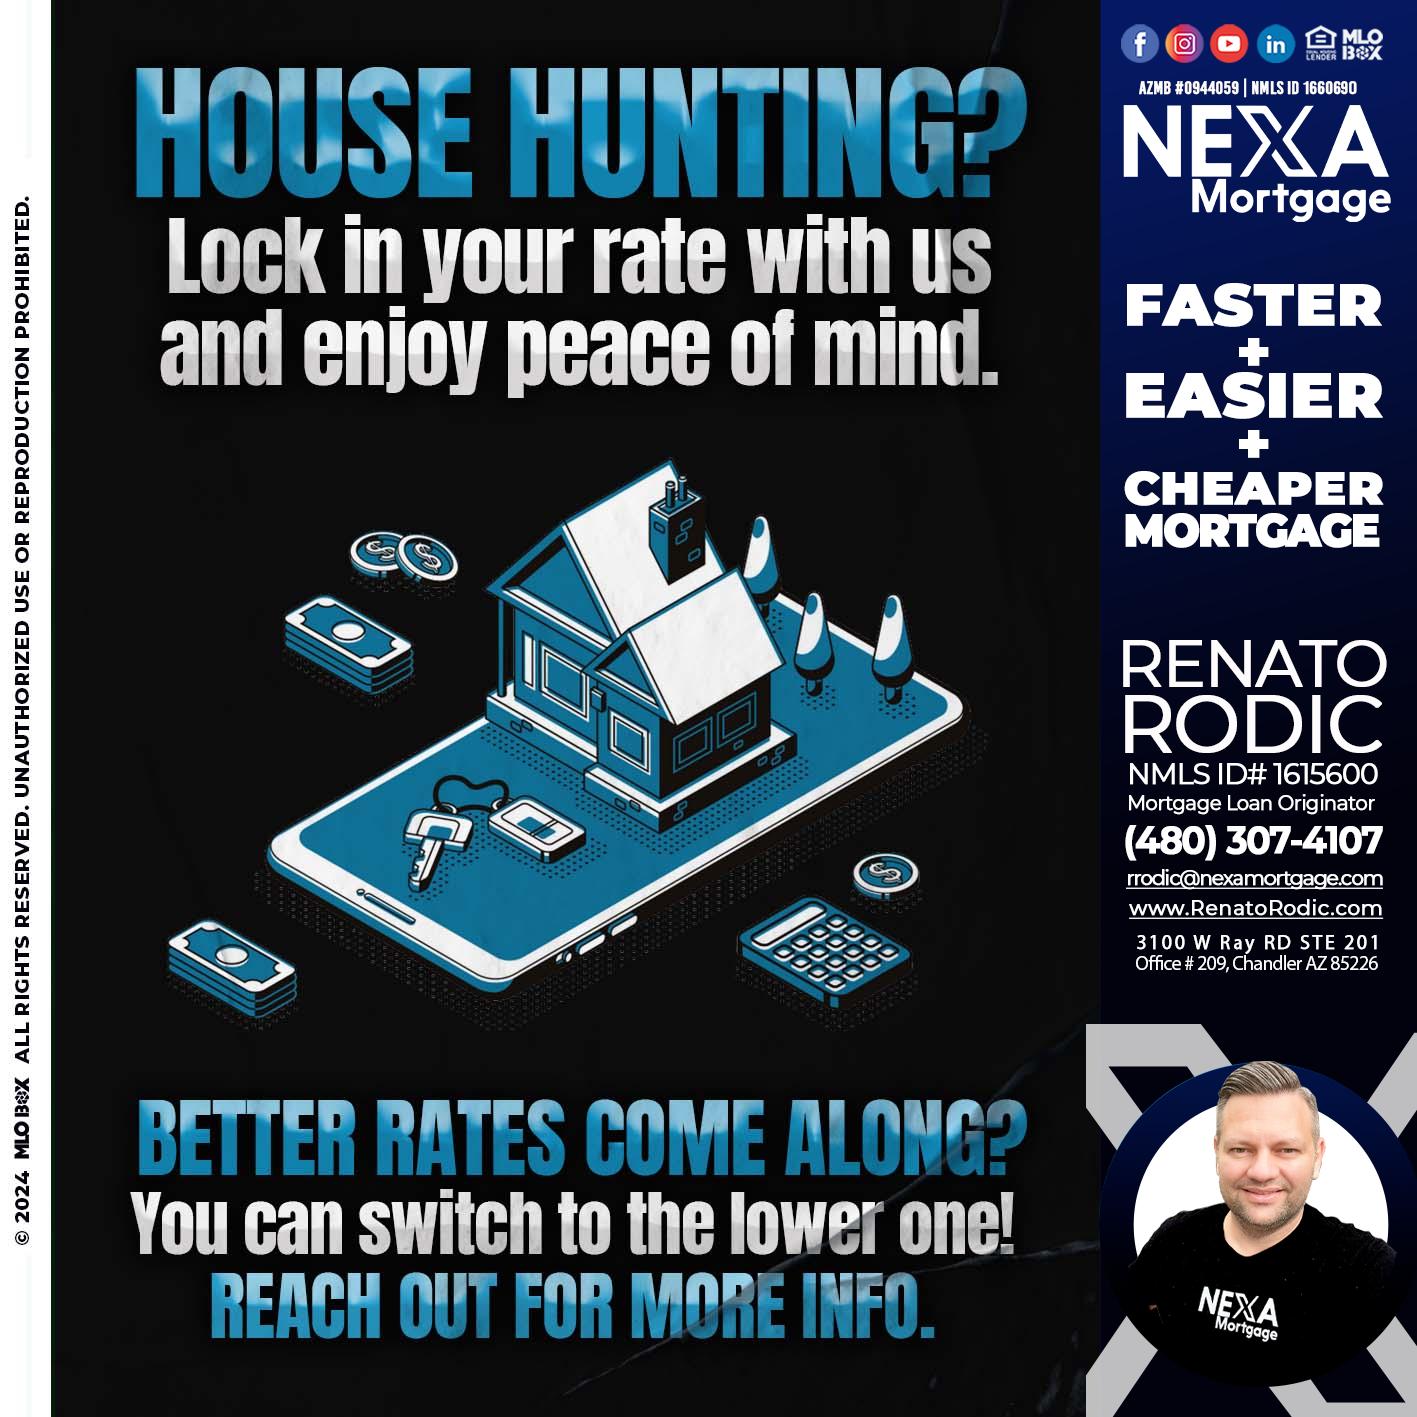 house hunting - Renato Rodic -Mortgage Loan Originator